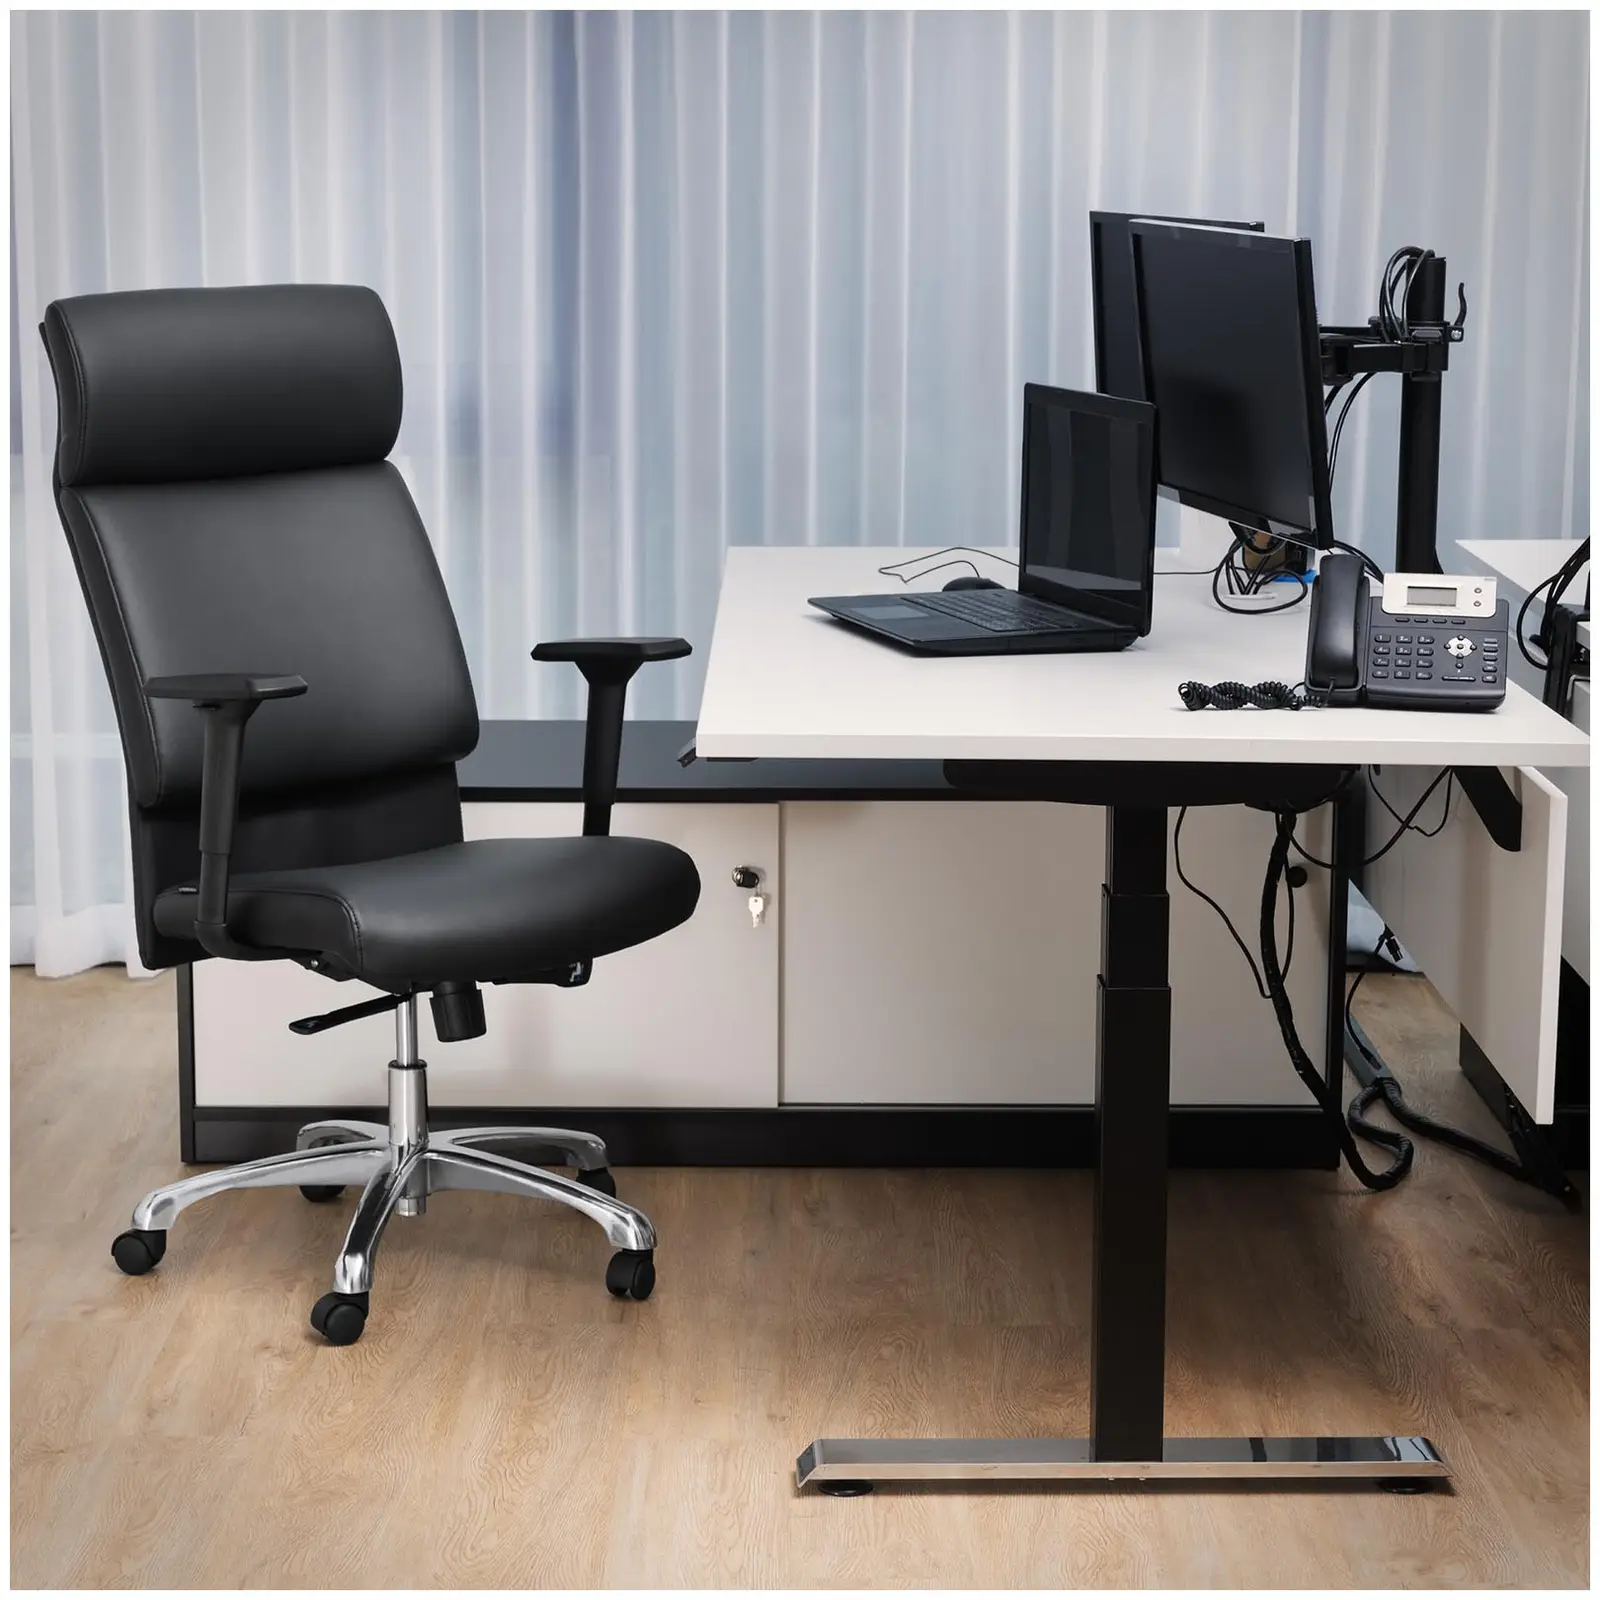 Kancelářská židle - manažerské křeslo - syntetická kůže - chrom - opěrka hlavy - 150 kg